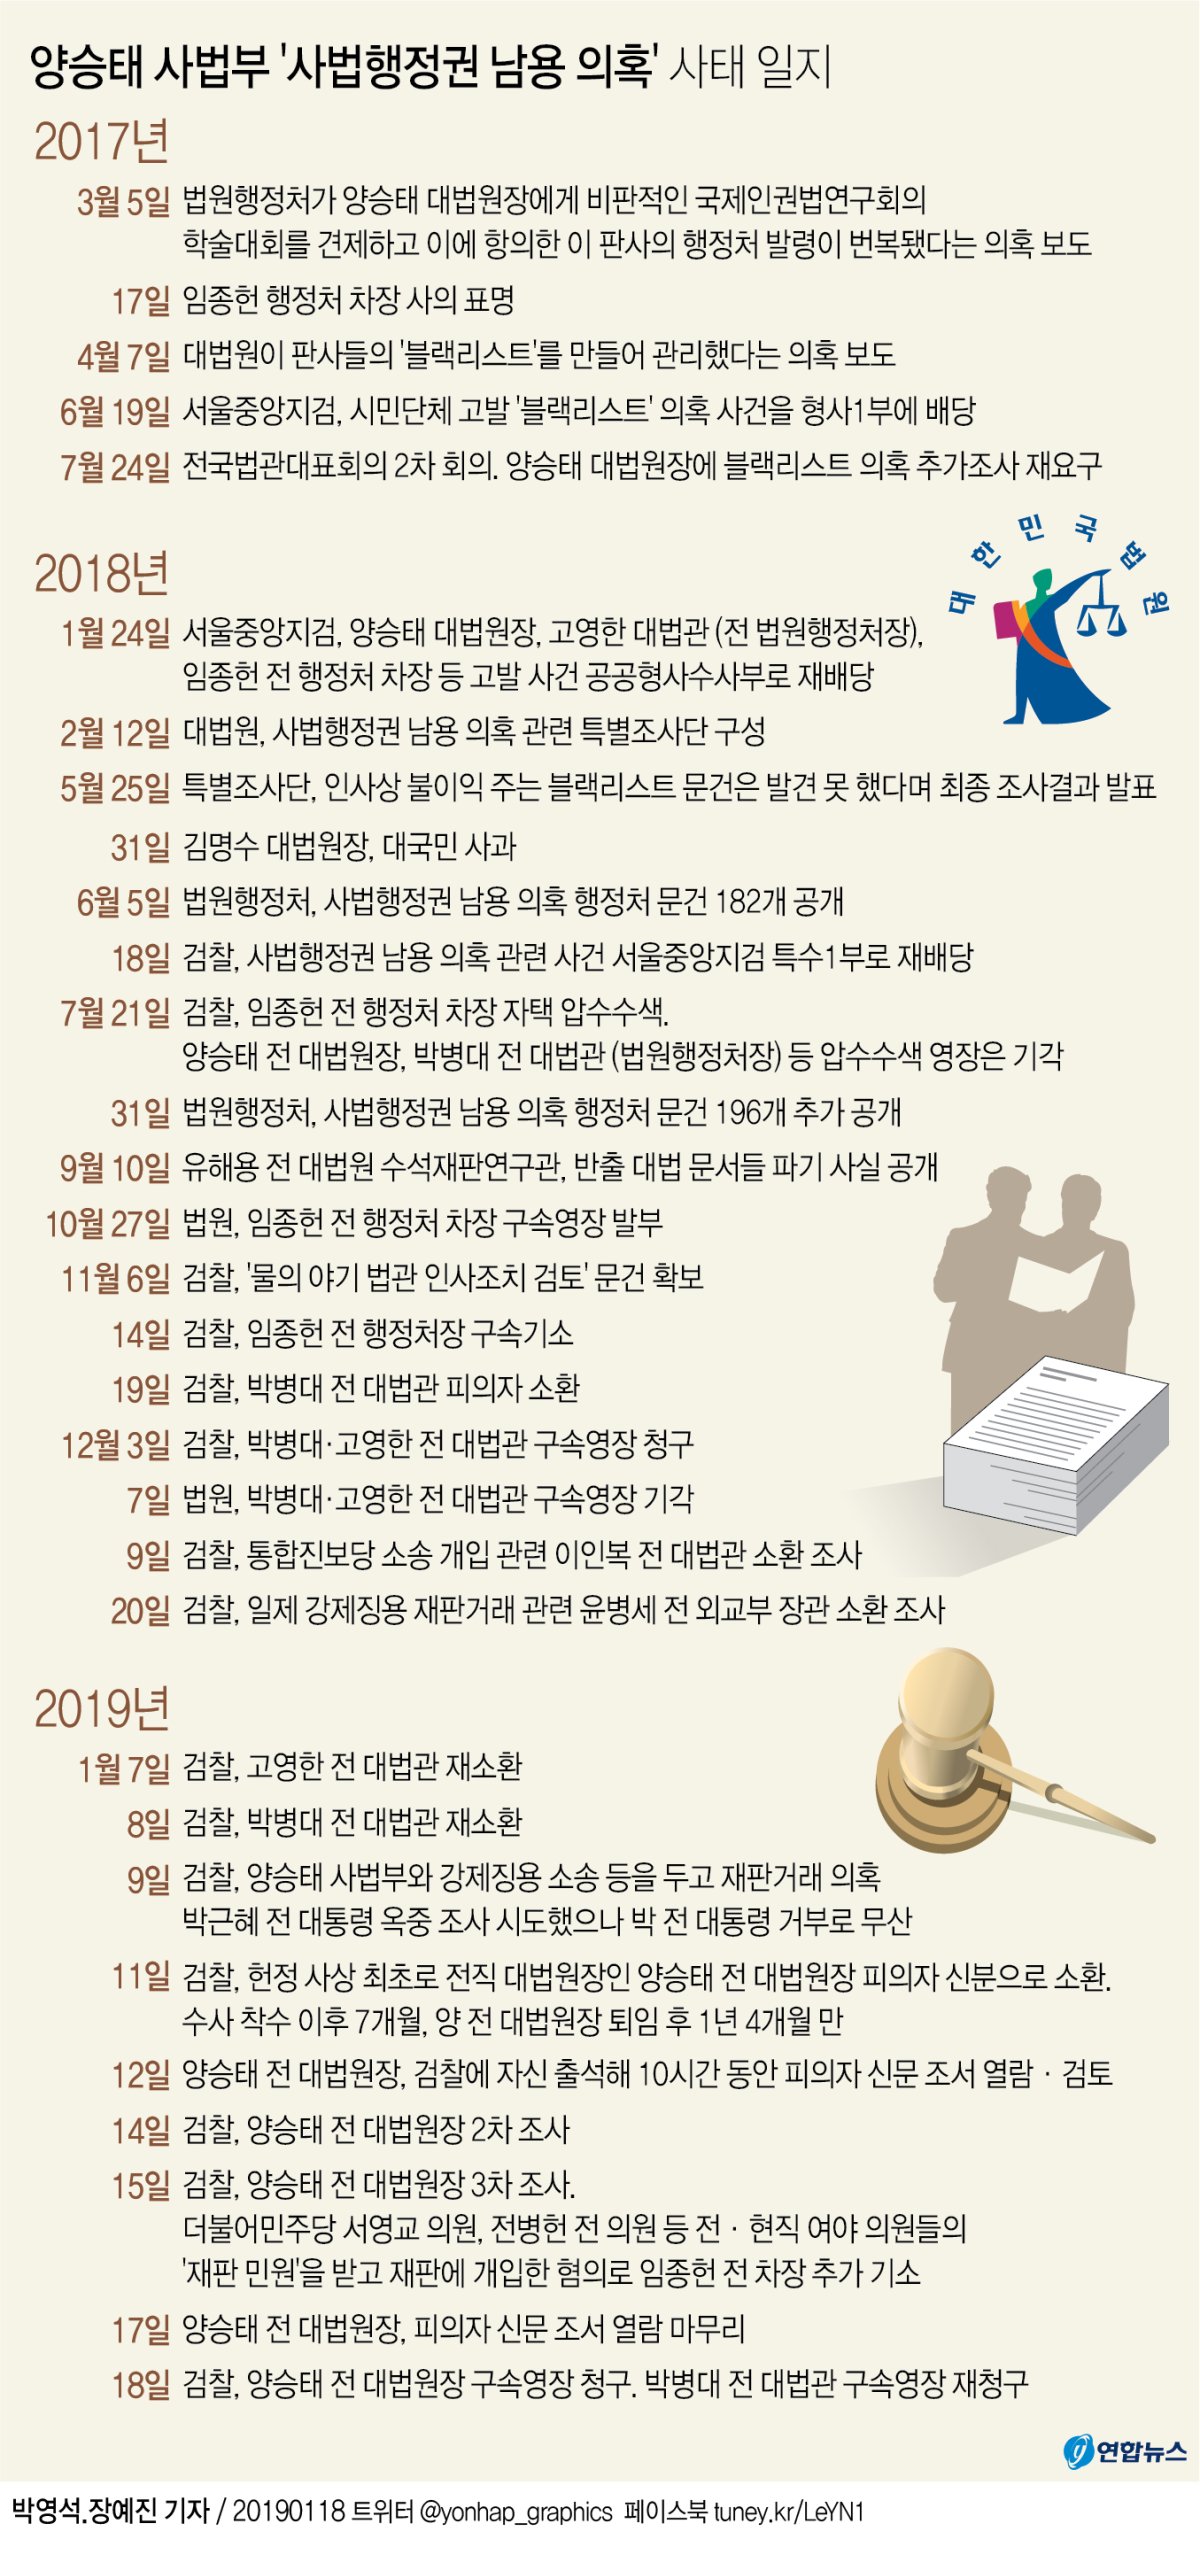 [그래픽] 양승태 사법부 '사법행정권 남용 의혹' 사태 일지